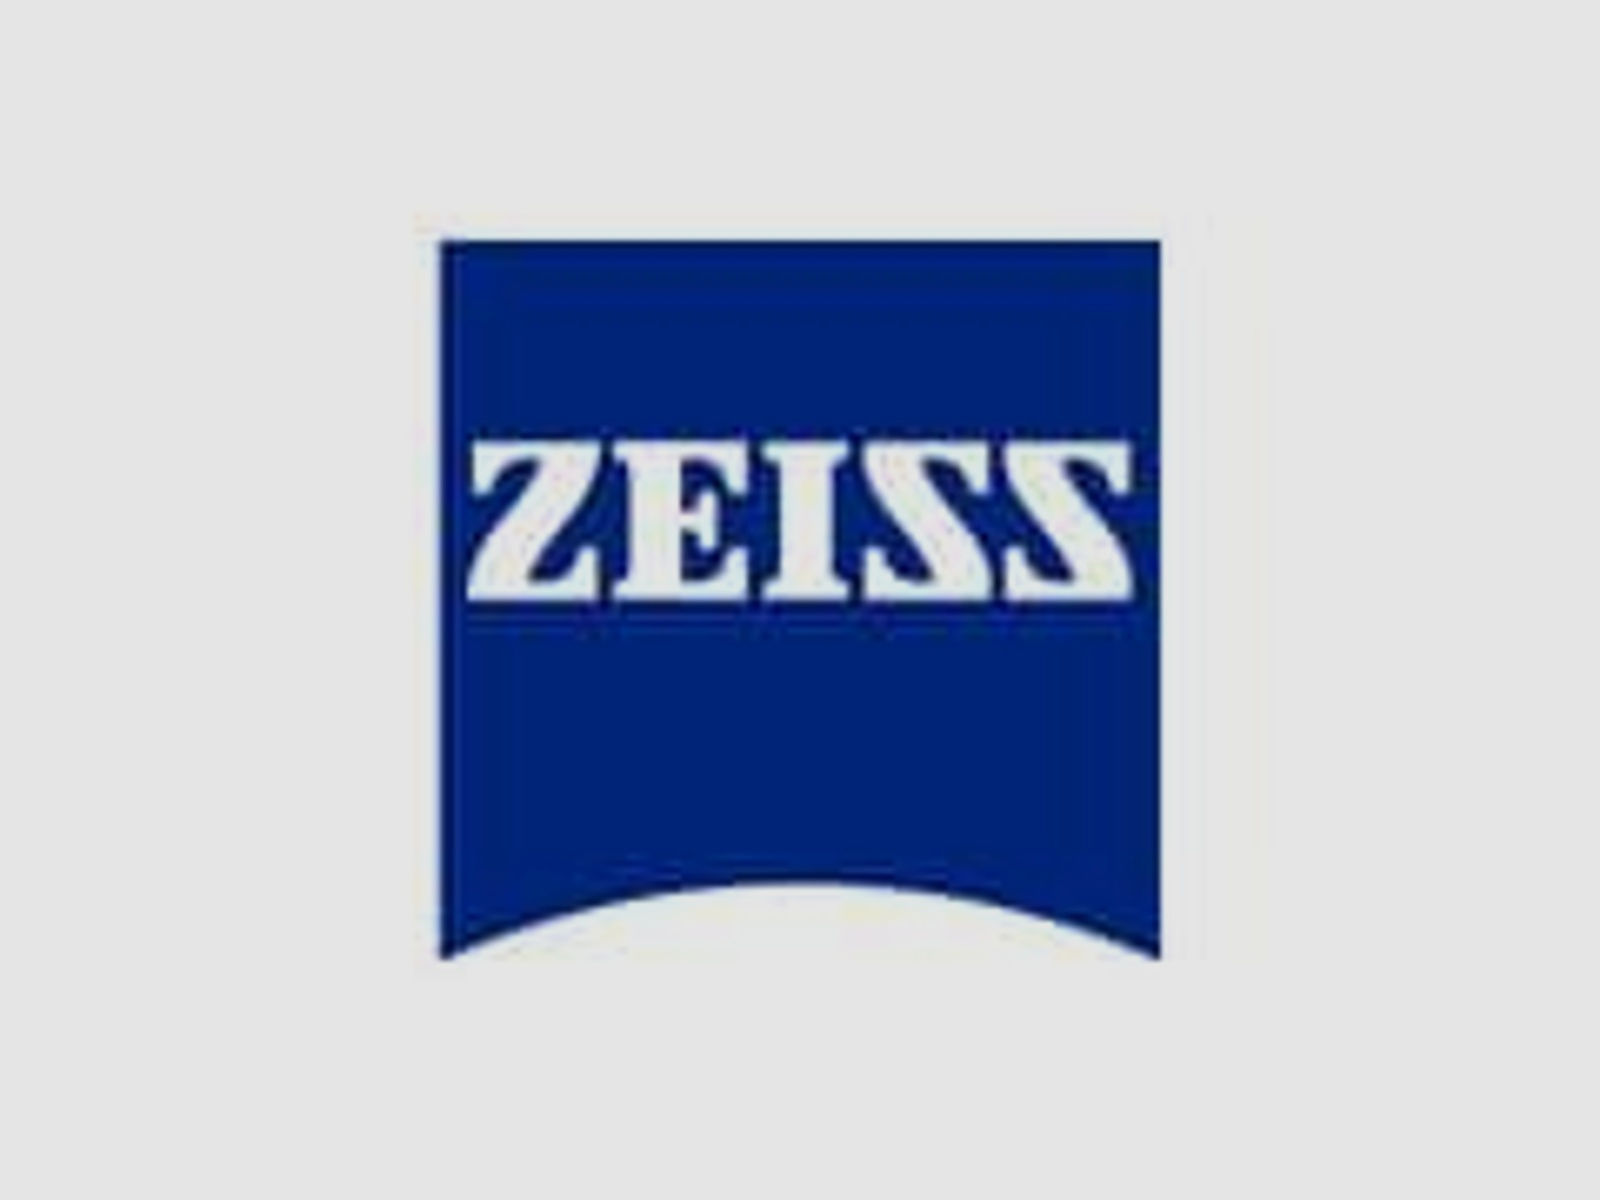 ZEISS Zubehör für Zielfernrohre Okular-Gummischutz 525401-0008 f. alle Duralyt Modelle